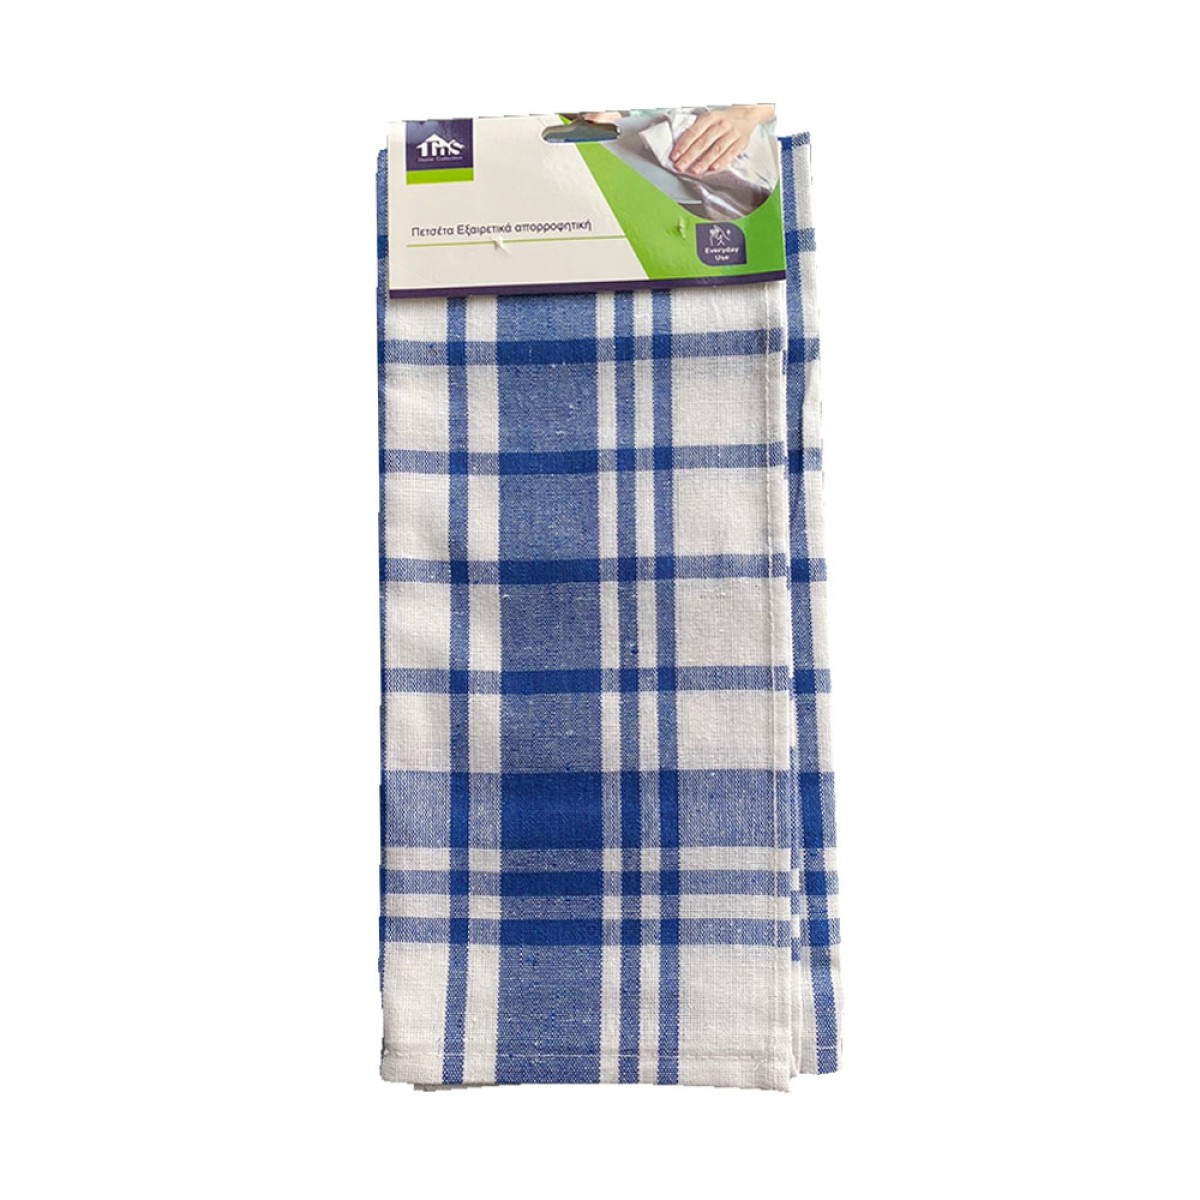 Πετσέτα Κουζίνας 48x68cm βαμβακερή μπλε & λευκό χρώμα TNS 39-950-2203-1